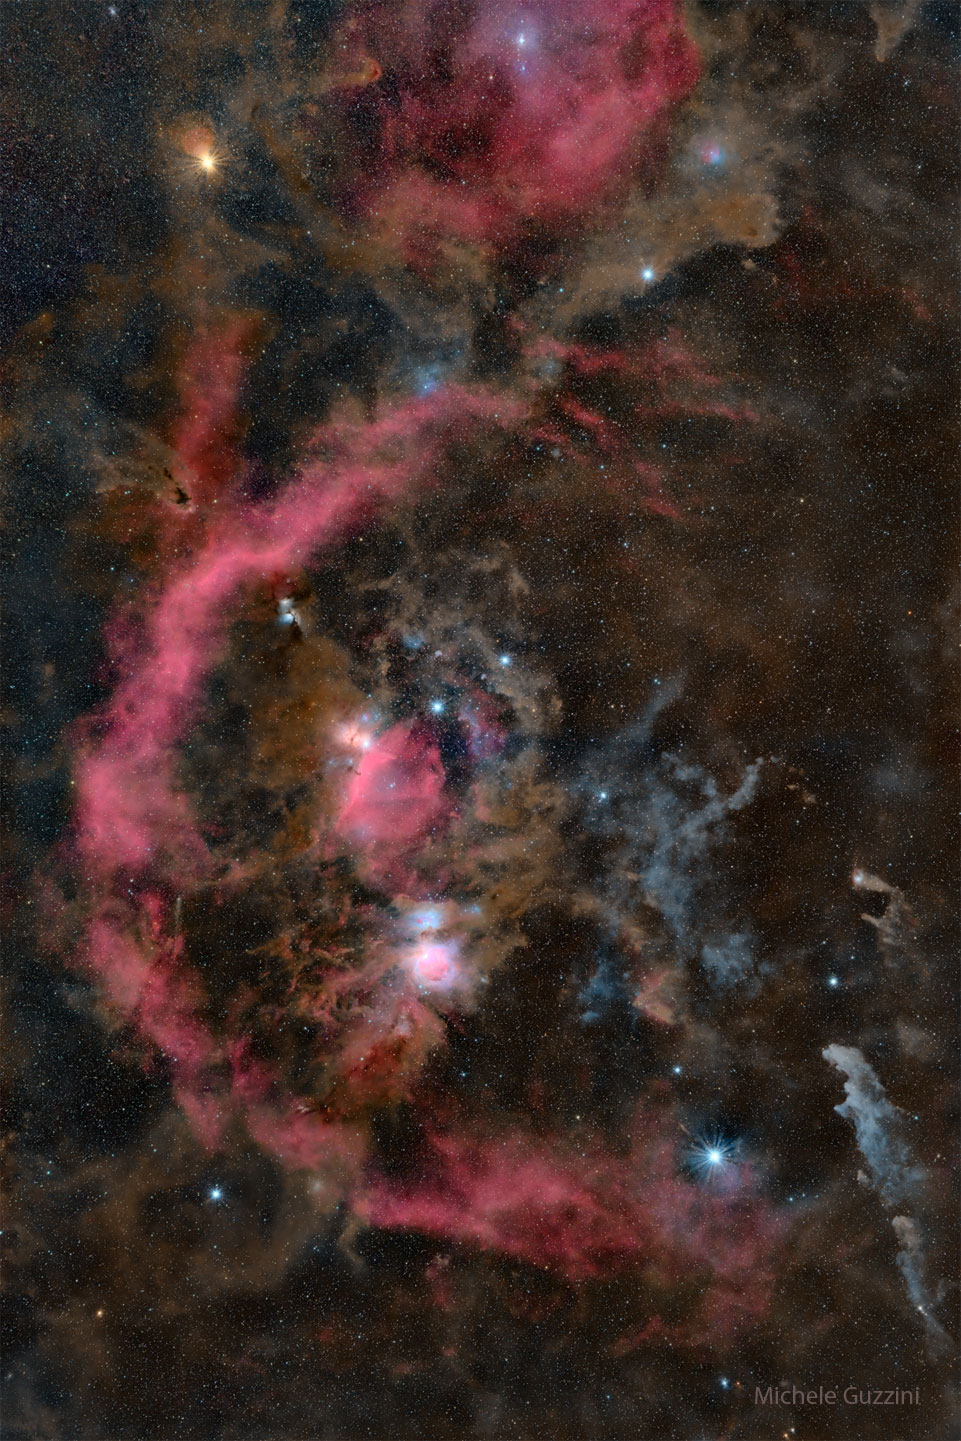 Na zdjęciu przedstawiony jest gwiazdozbiór Oriona, jednak jest ono tak głębokie, że widać również wiele mgławic, co sprawia, że 
wraz z gwiazdami pasa tworzą całą postać. Po najechaniu na zdjęcie kursorem pojawi się wersja z podpisanymi najjaśniejszymi gwiazdami.
Więcej szczegółowych informacji w opisie poniżej.